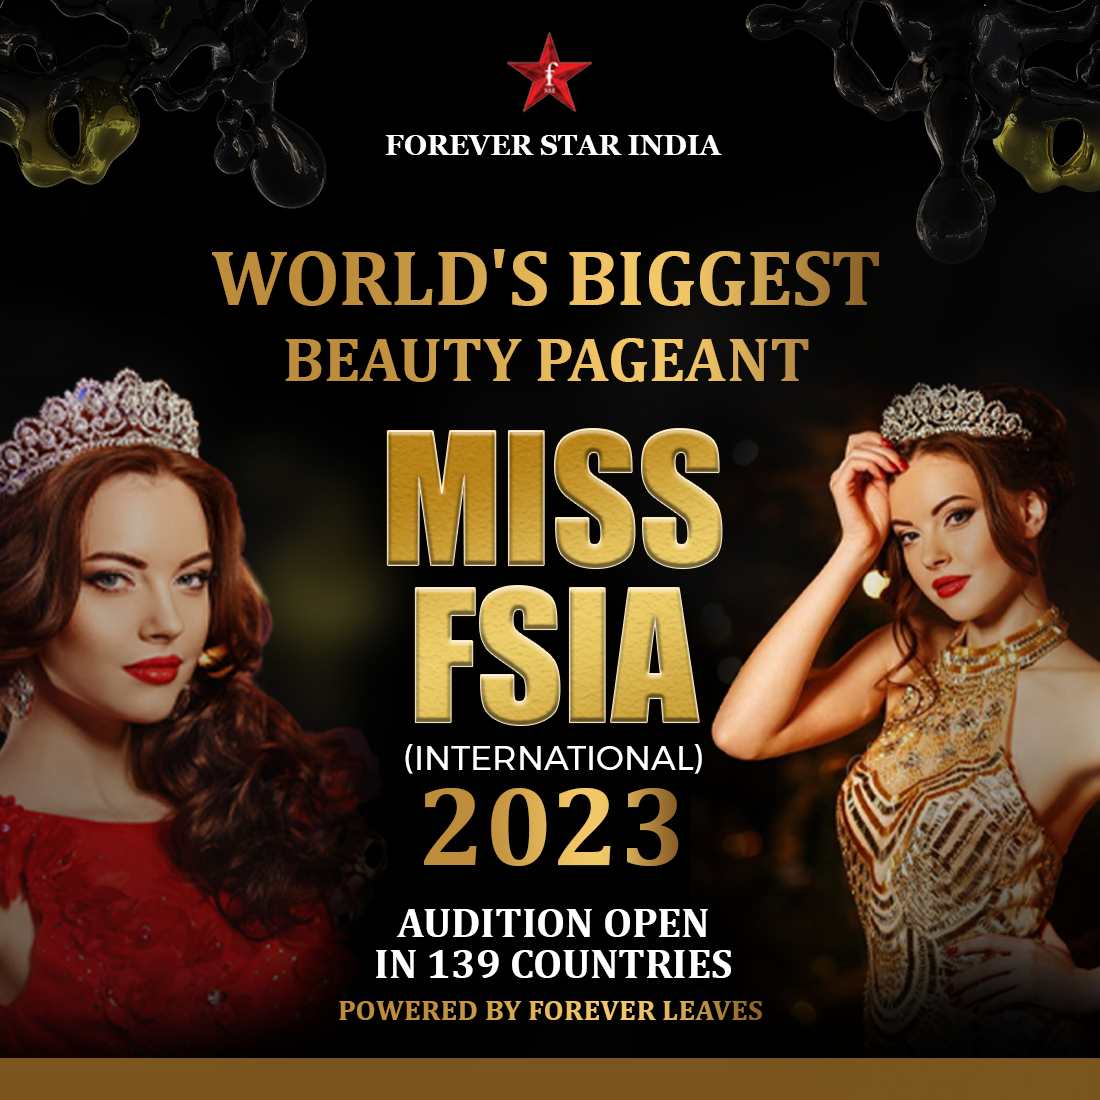 Miss FSIA 2023